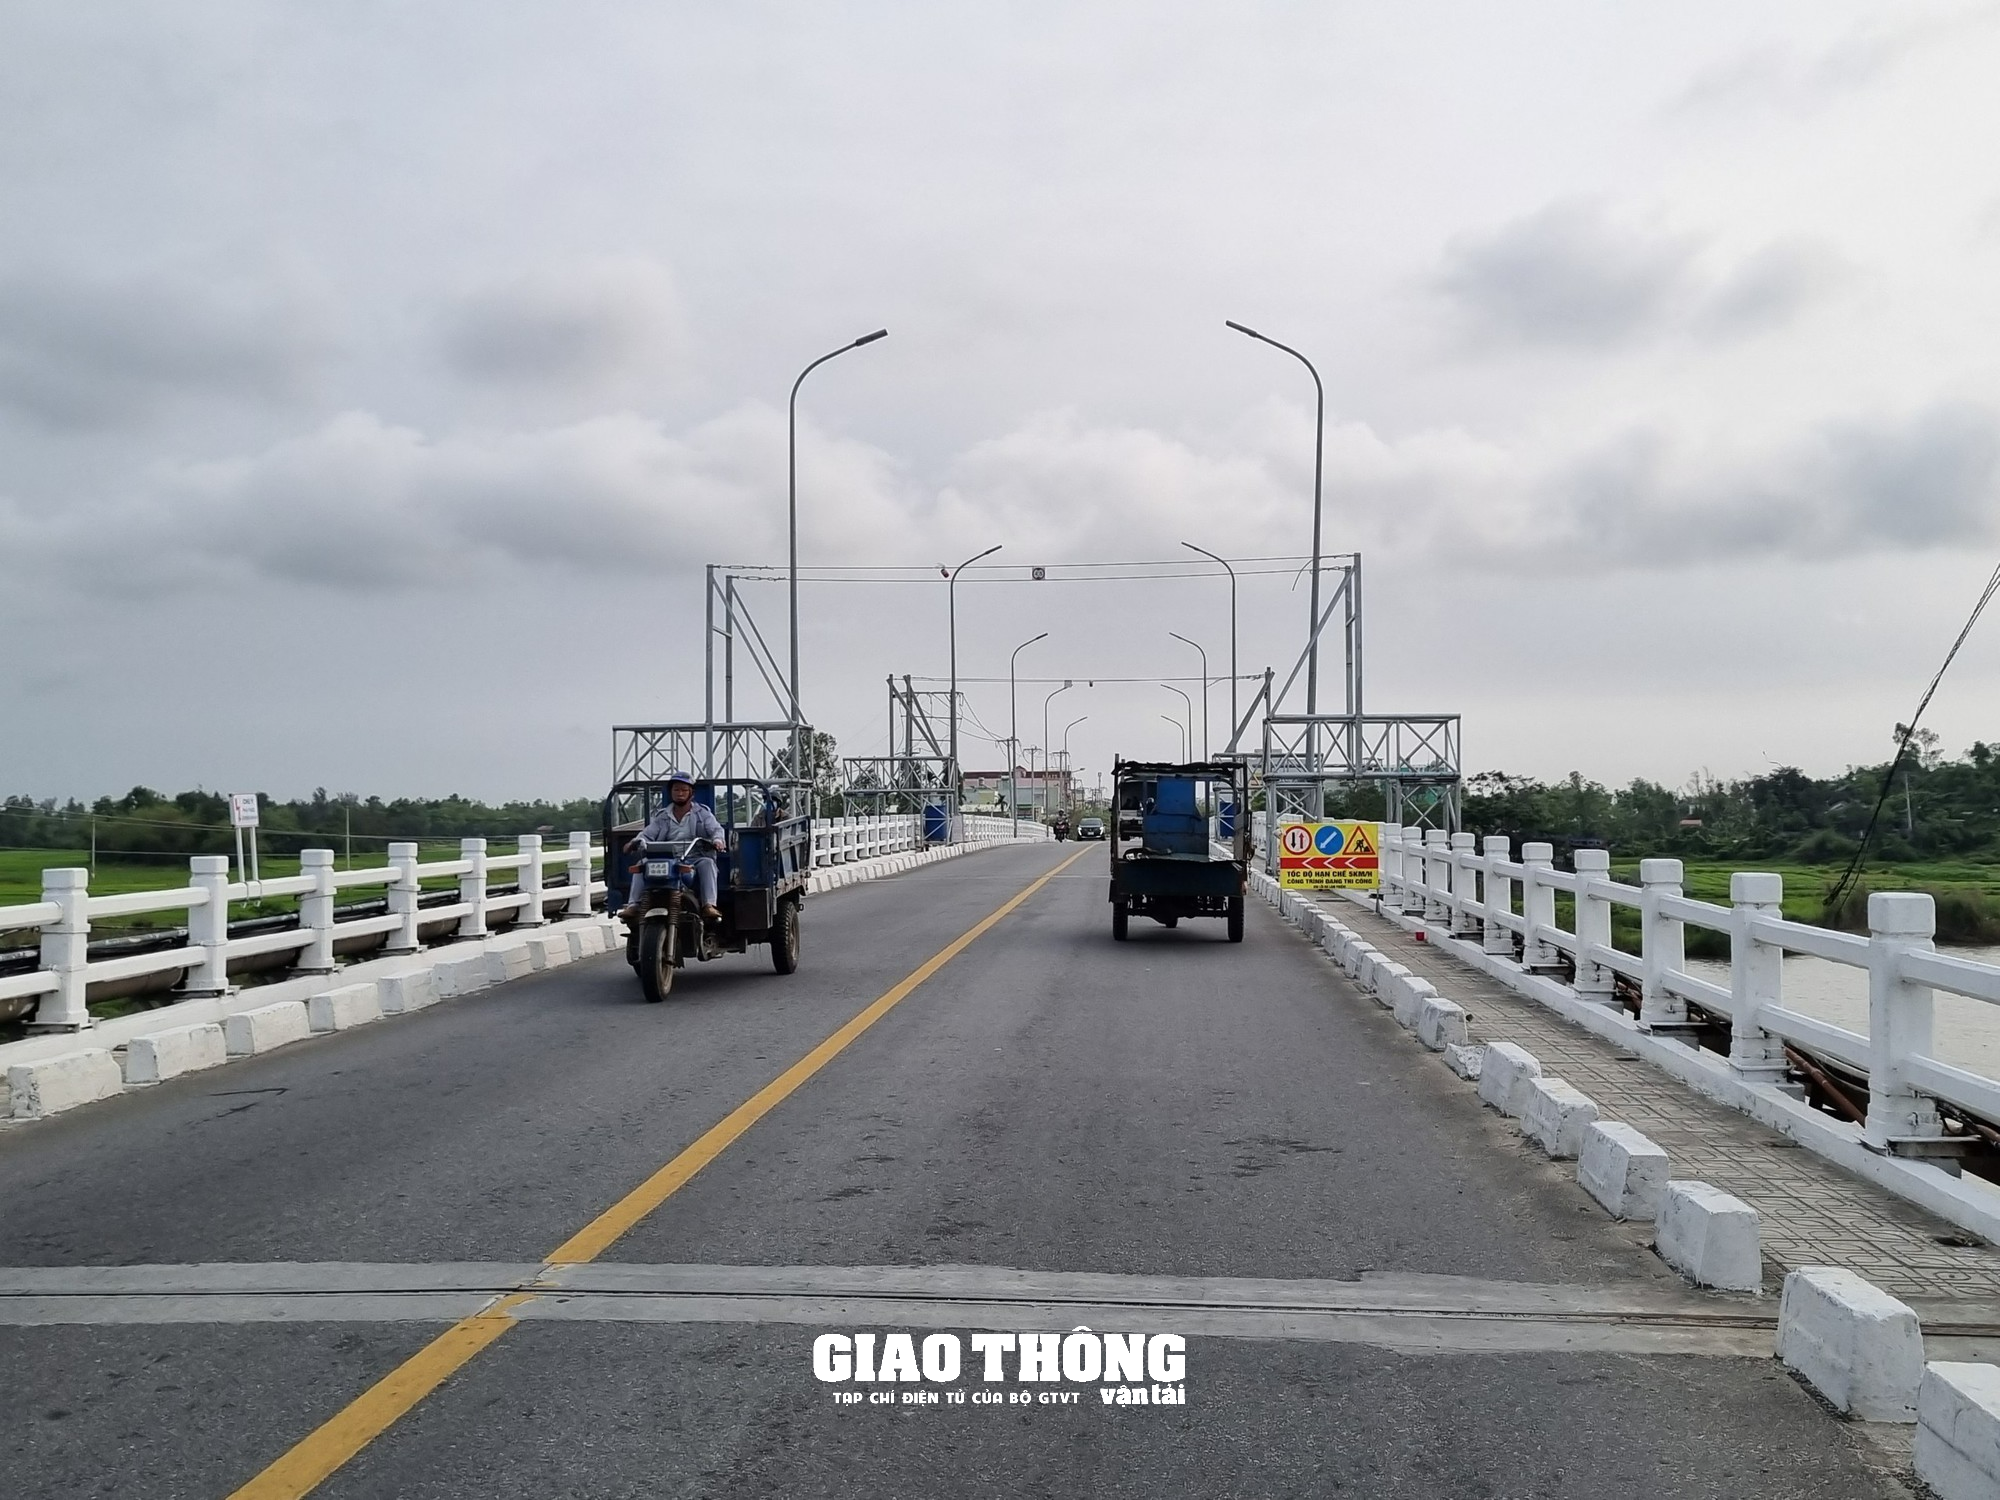 Lắp đặt các thiết bị thông minh từ Hàn Quốc trên hai cây cầu ở Quảng Nam - Ảnh 1.